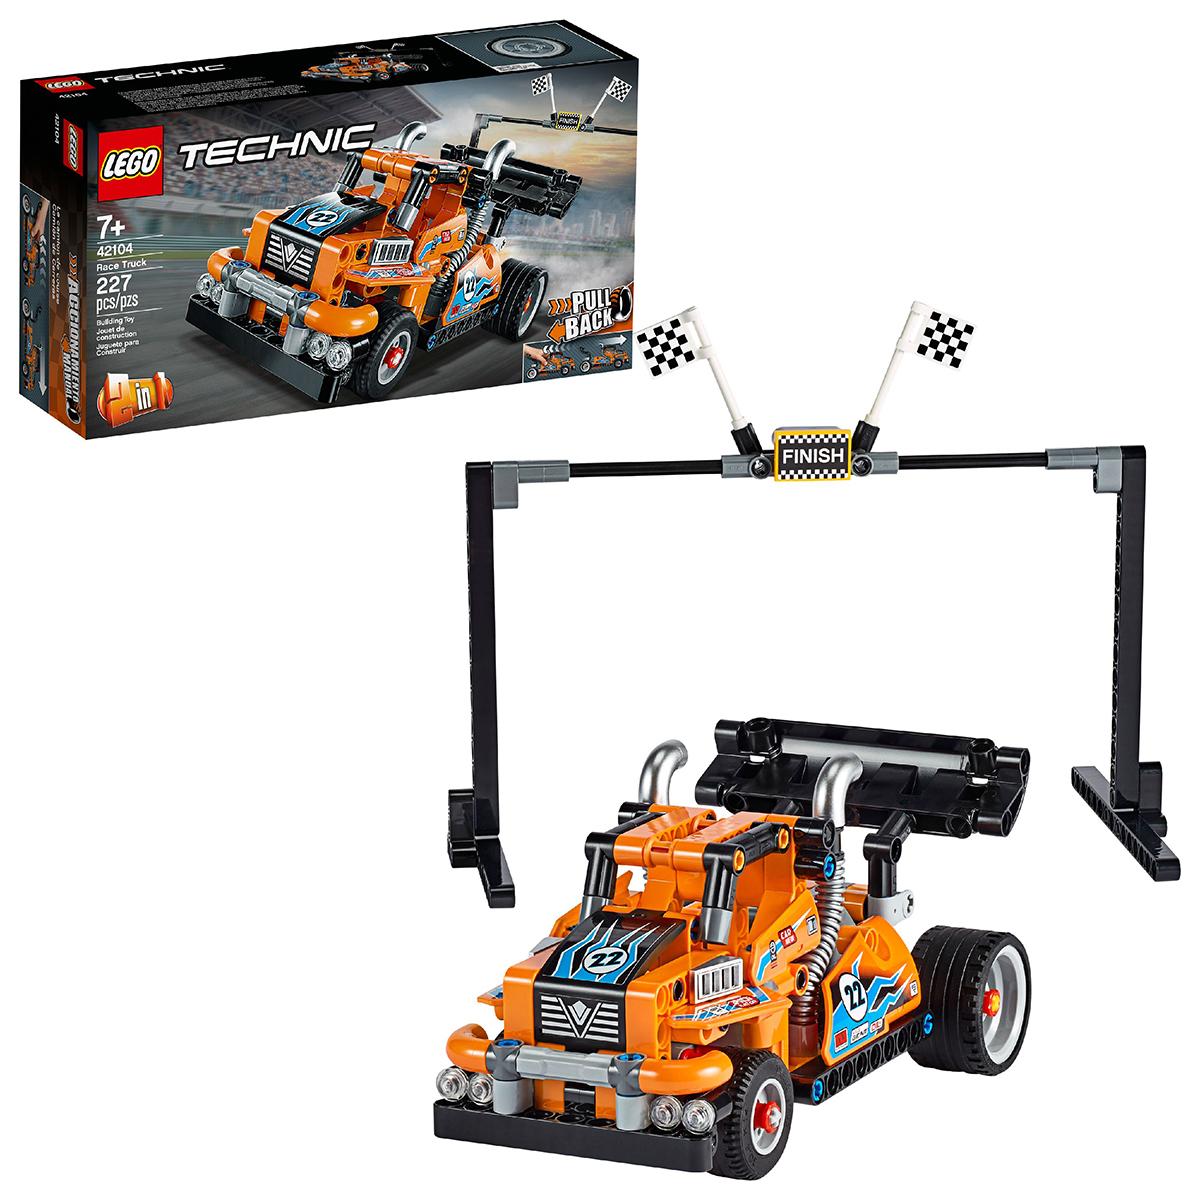 LEGO 42104 Technic Race Truck Pull Back Building Kit for $13.99